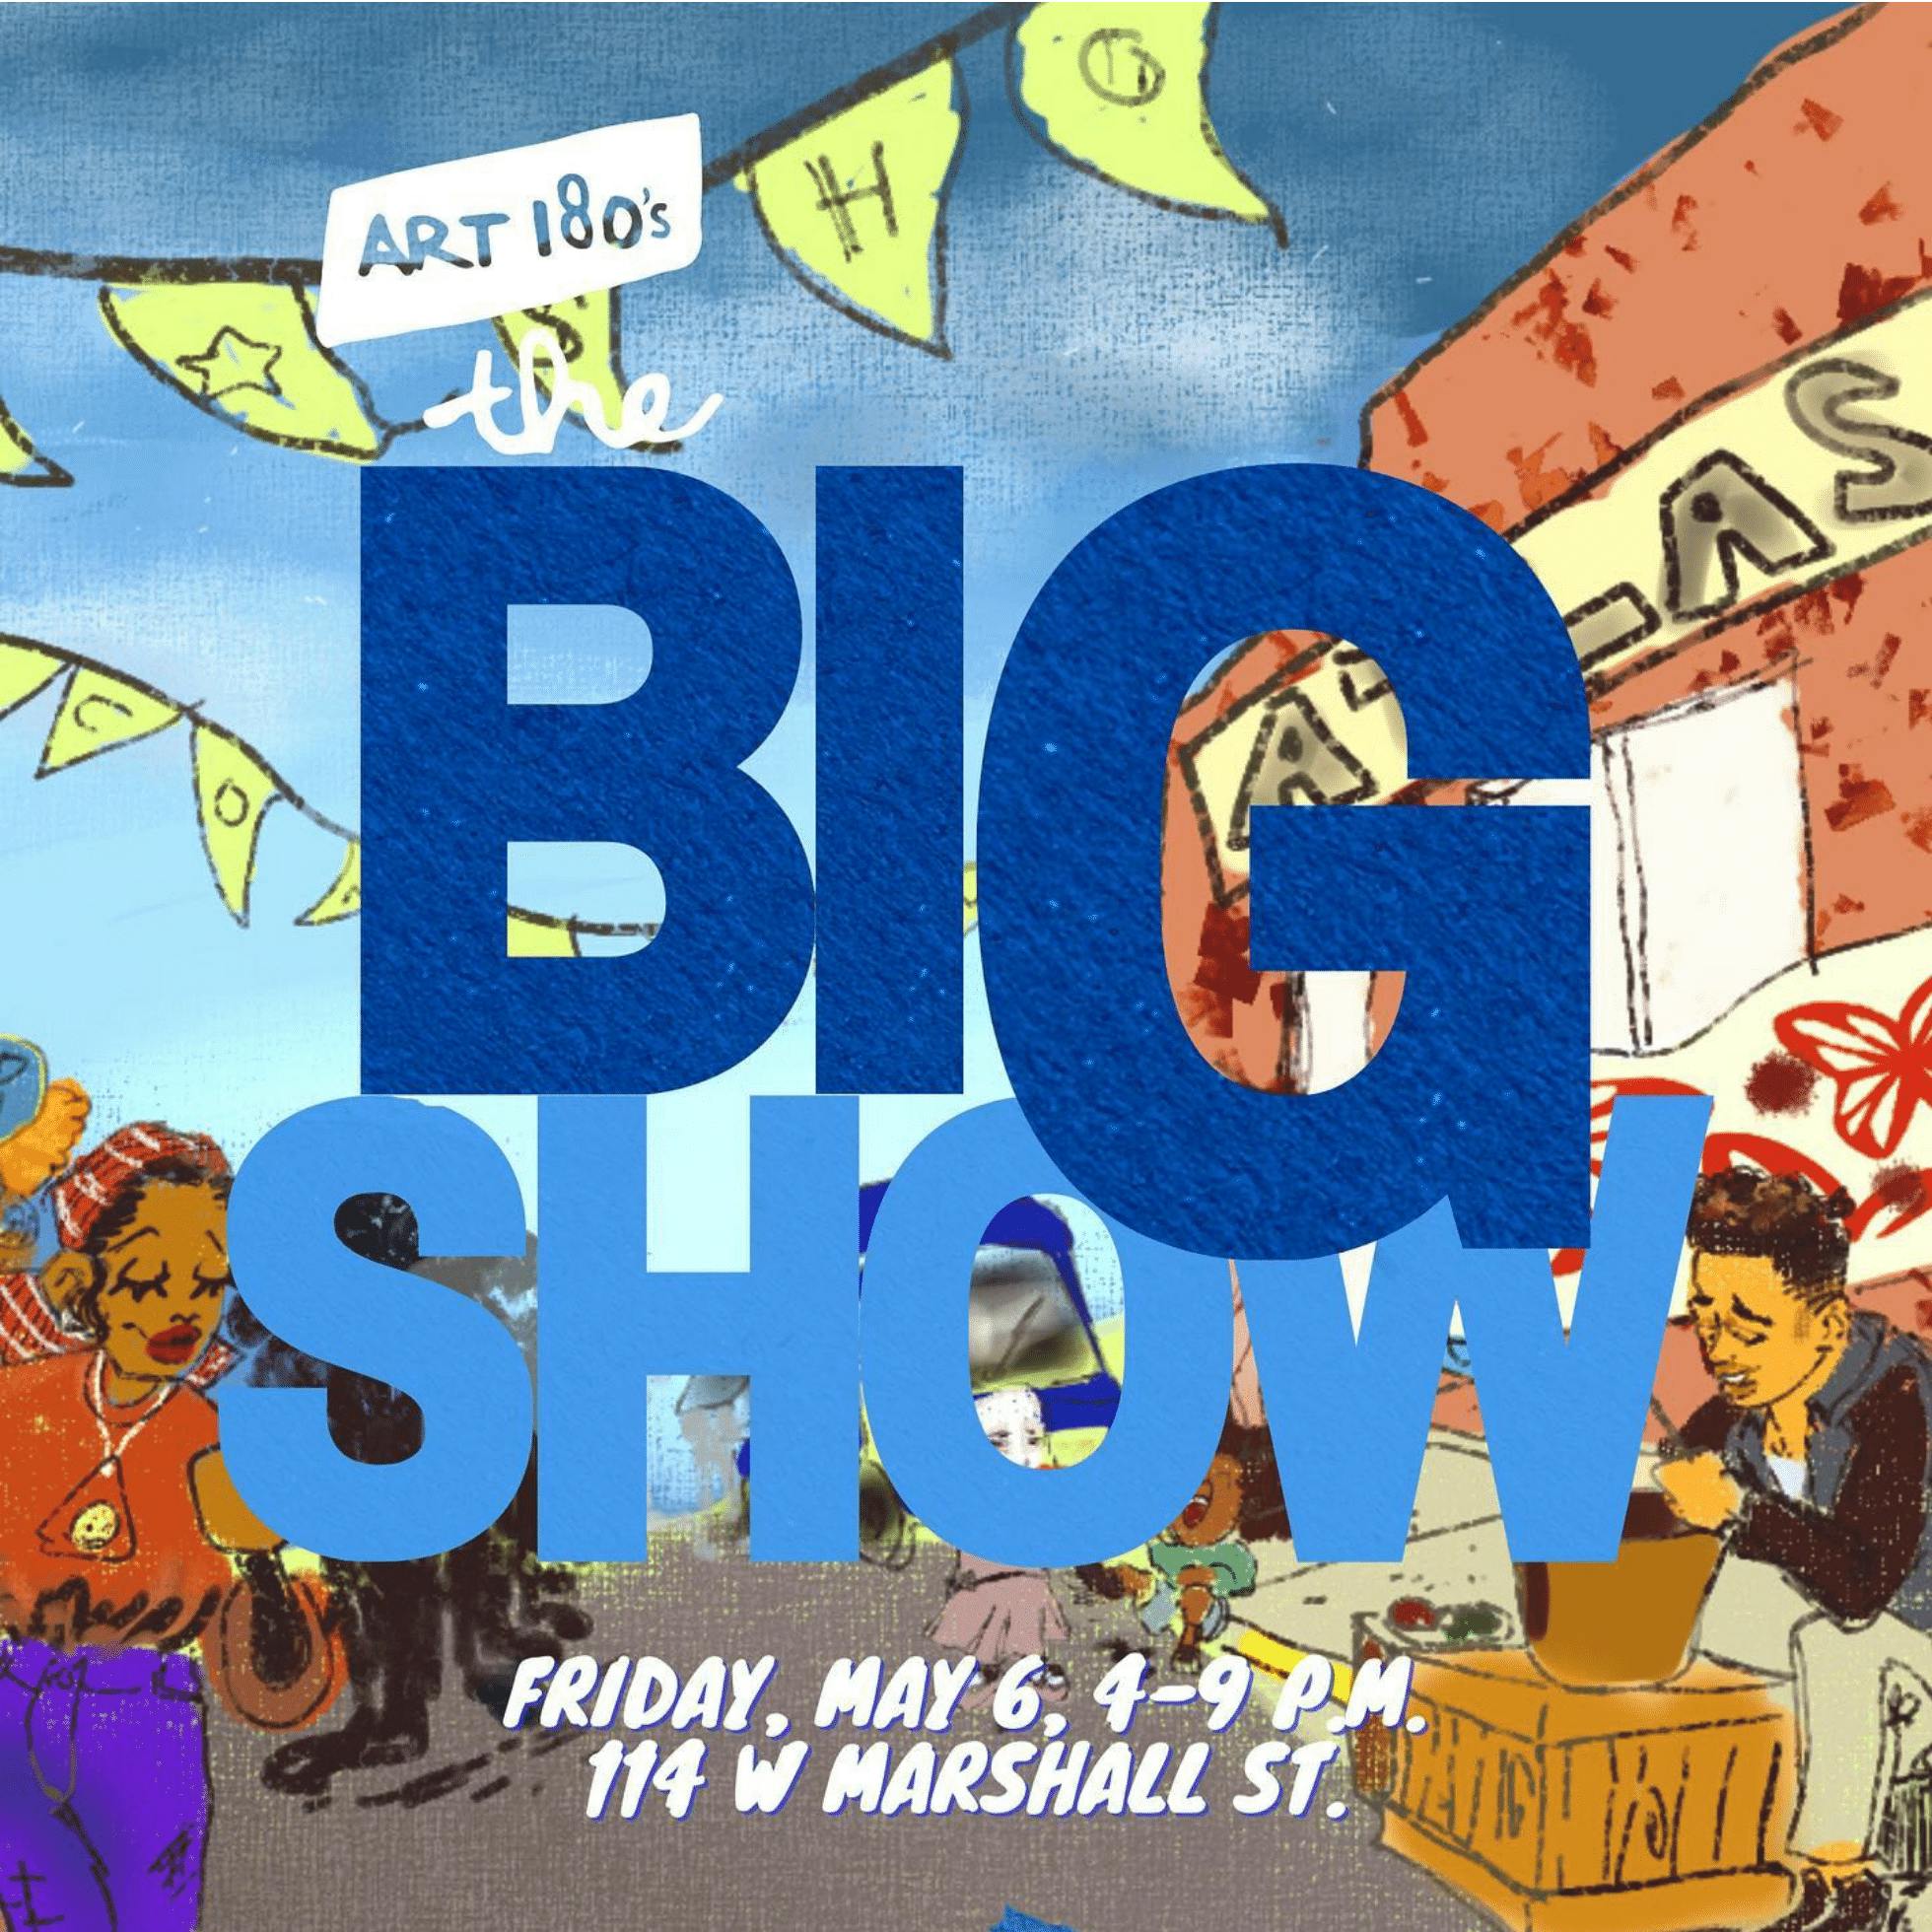 Art 180's The BIG Show